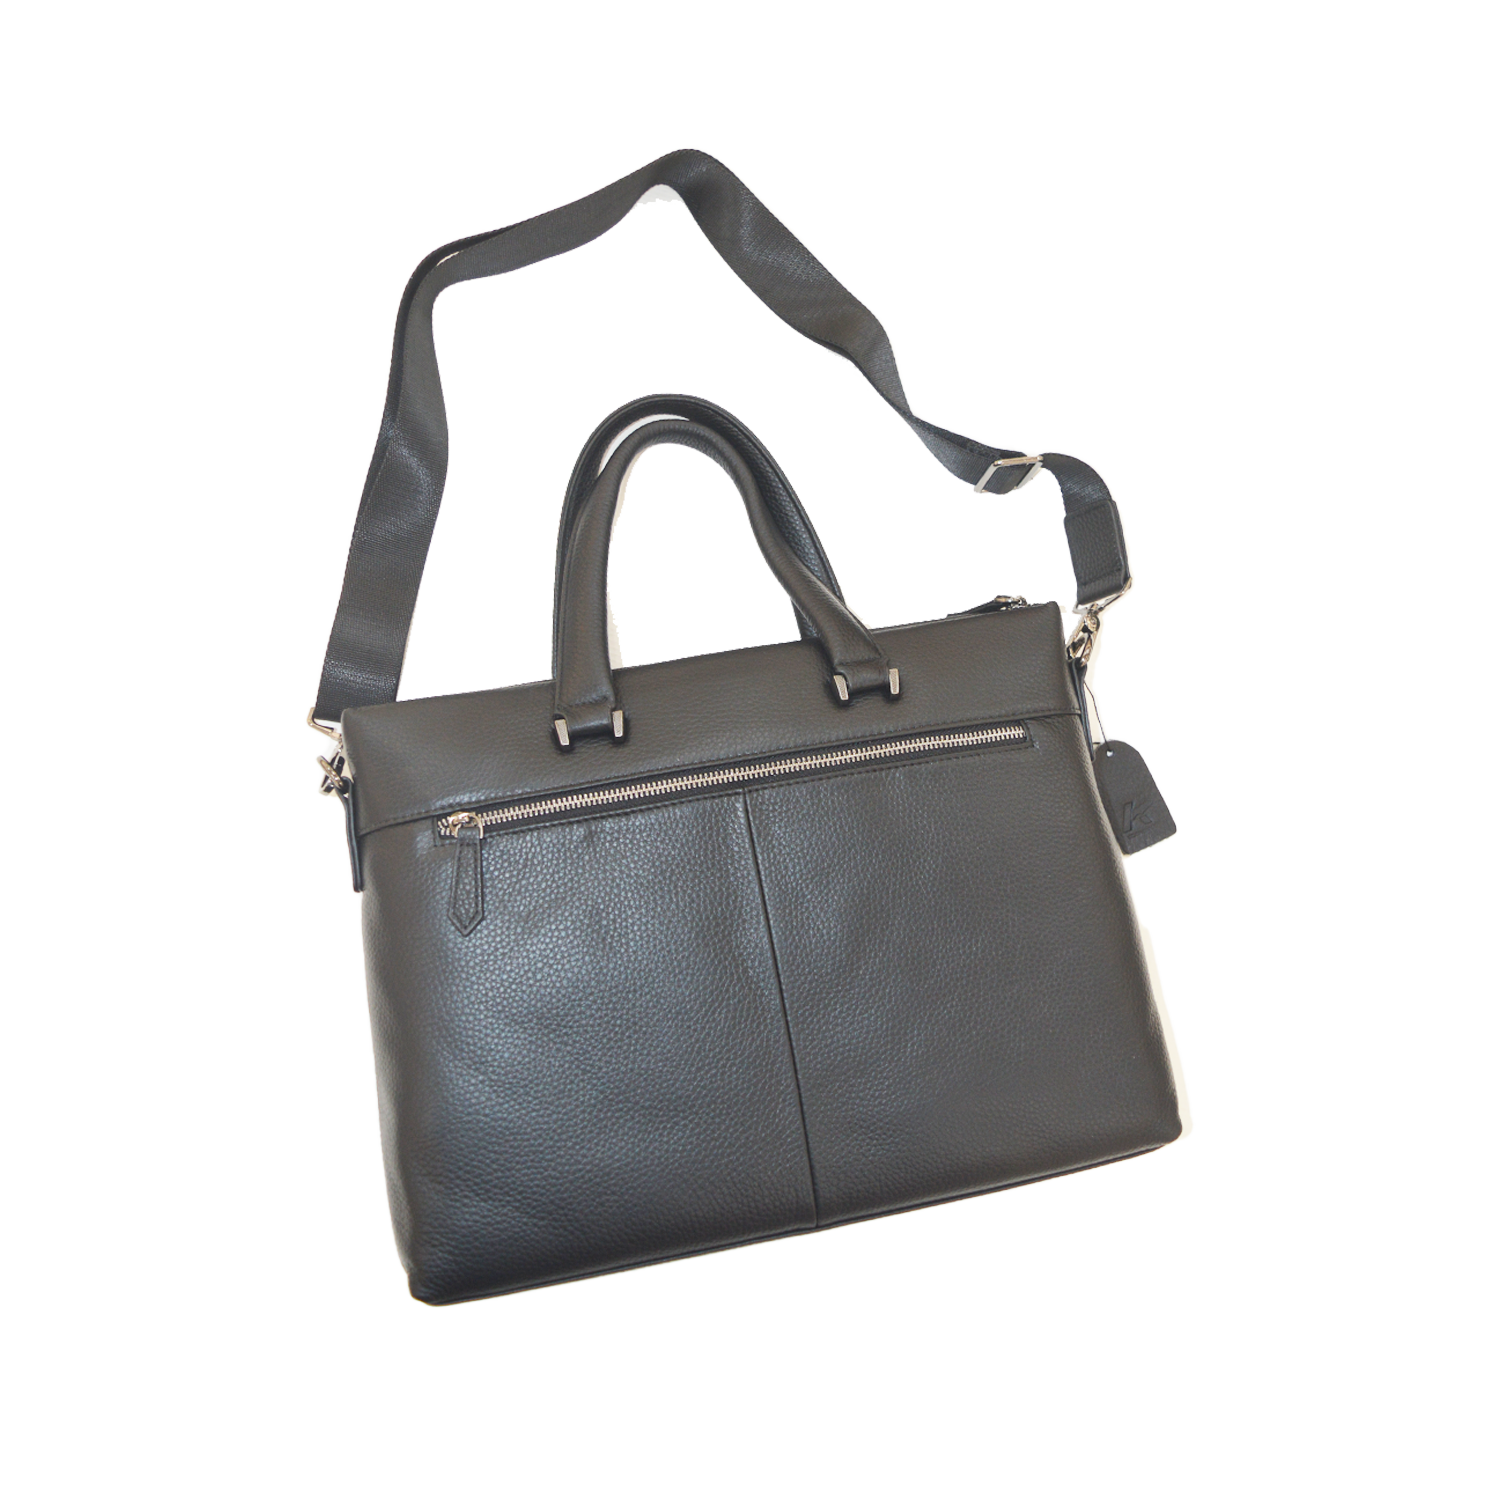 Genuine Leather Man Bag Briefcases Laptop Briefcase Business Bag Crossbody Handbag